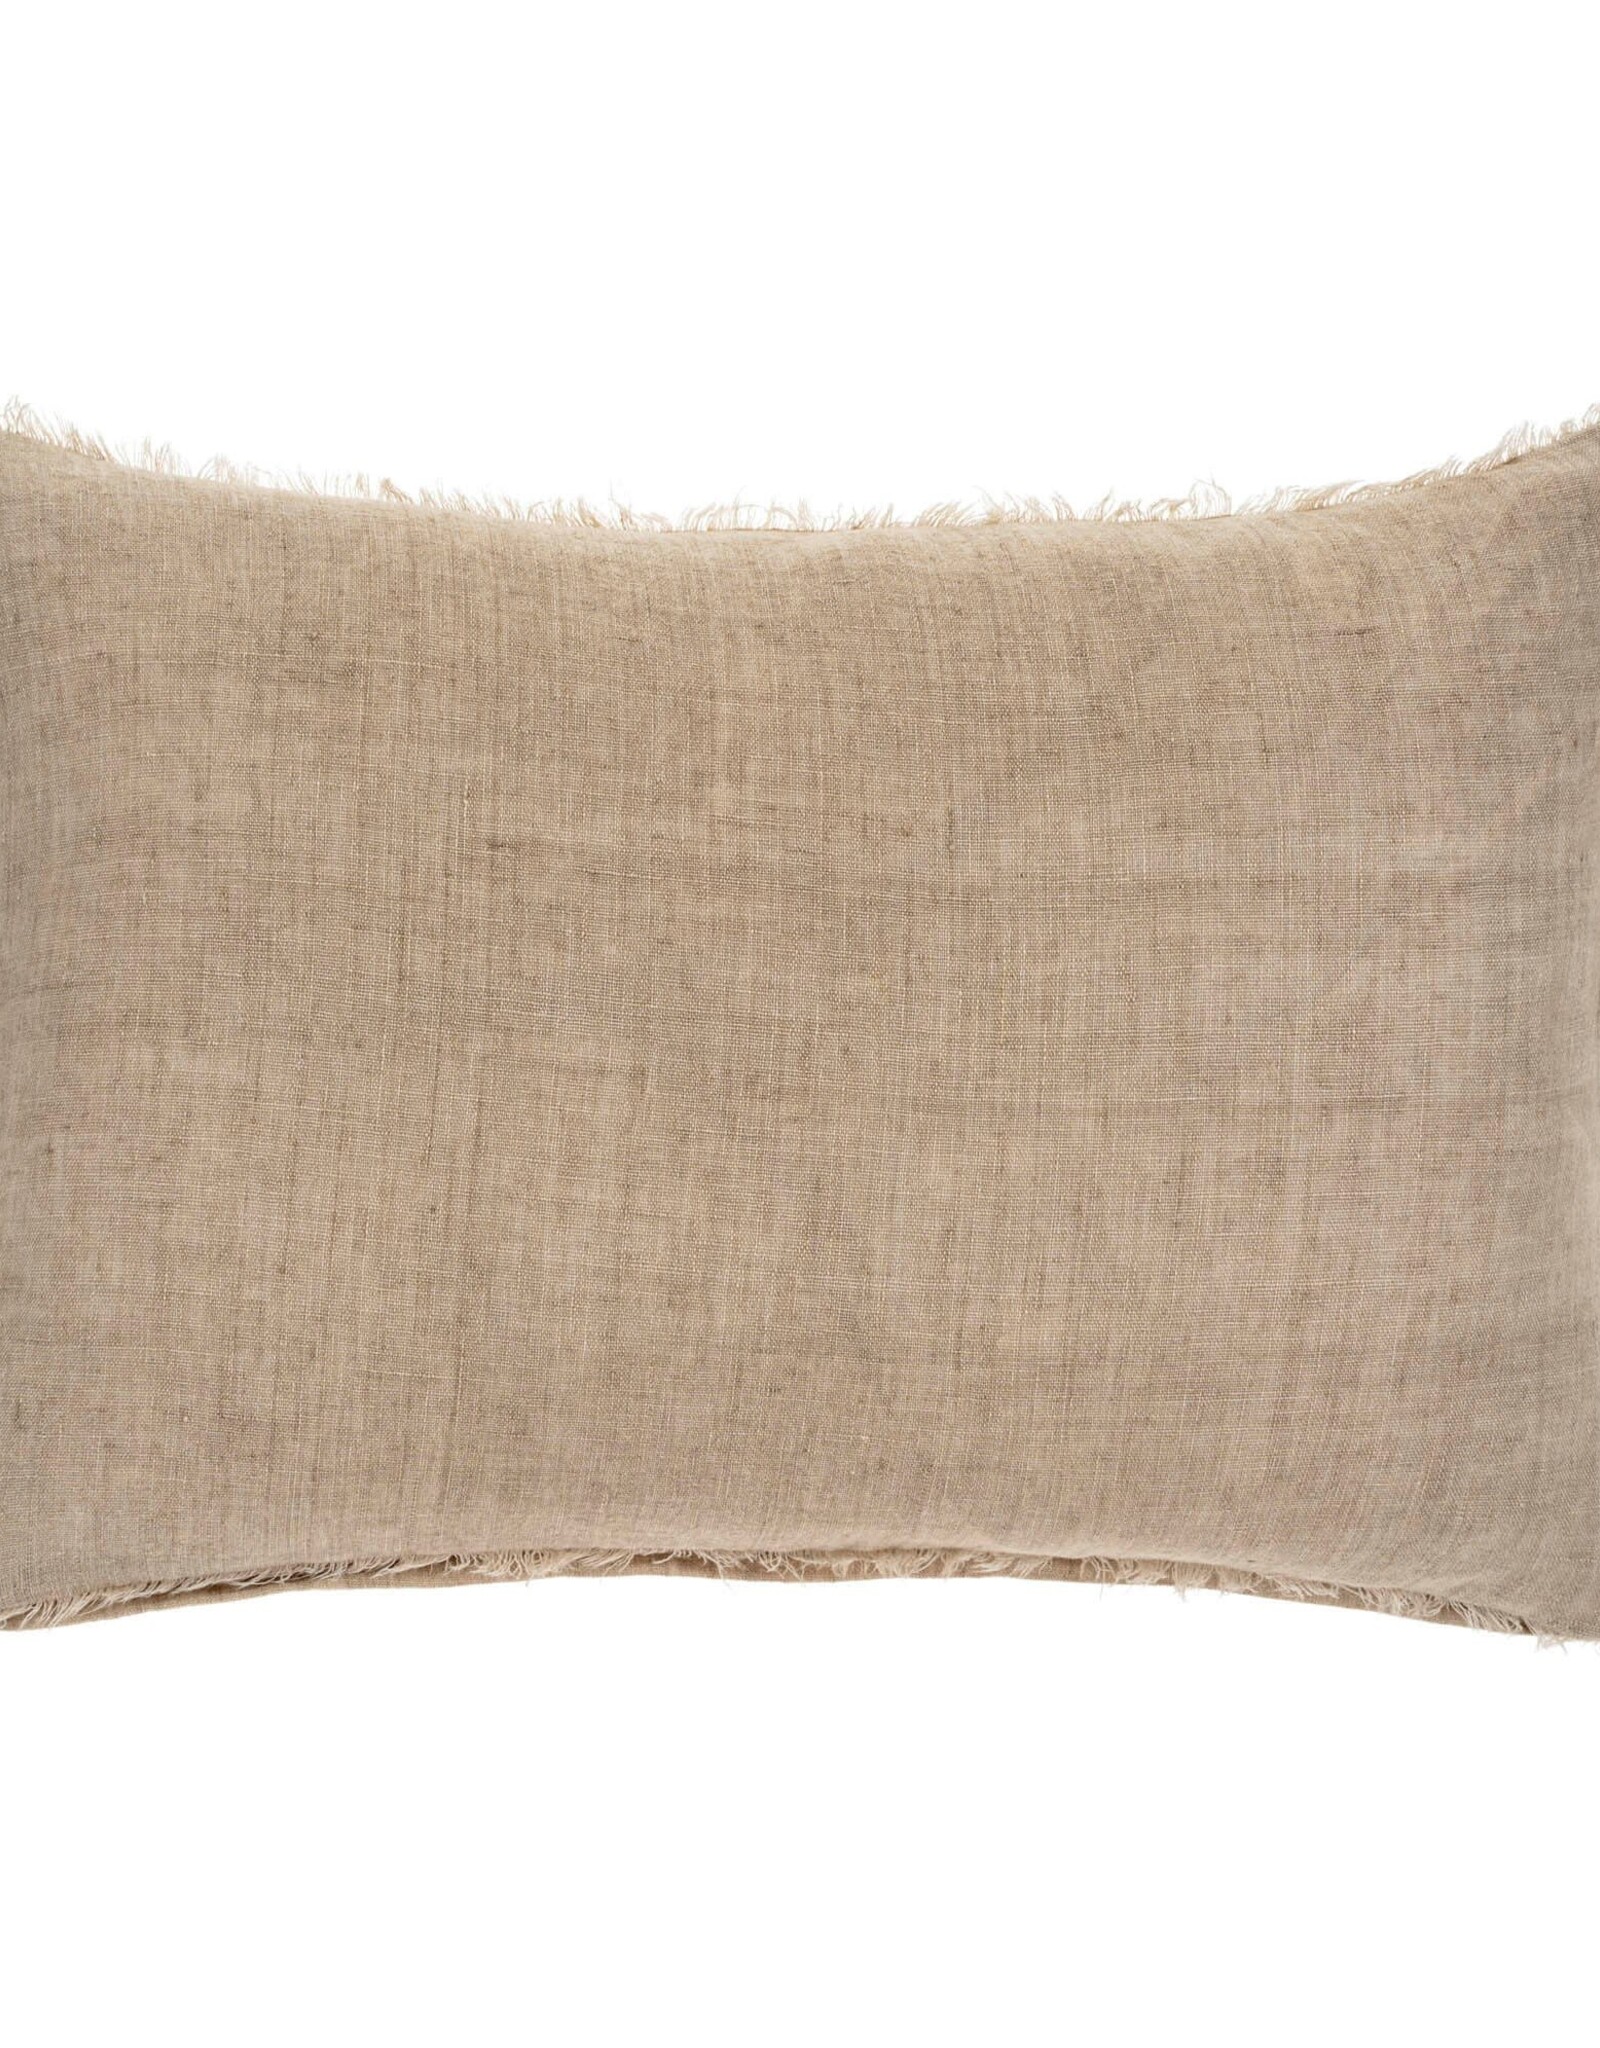 Lina Linen Pillow Oat 16x24